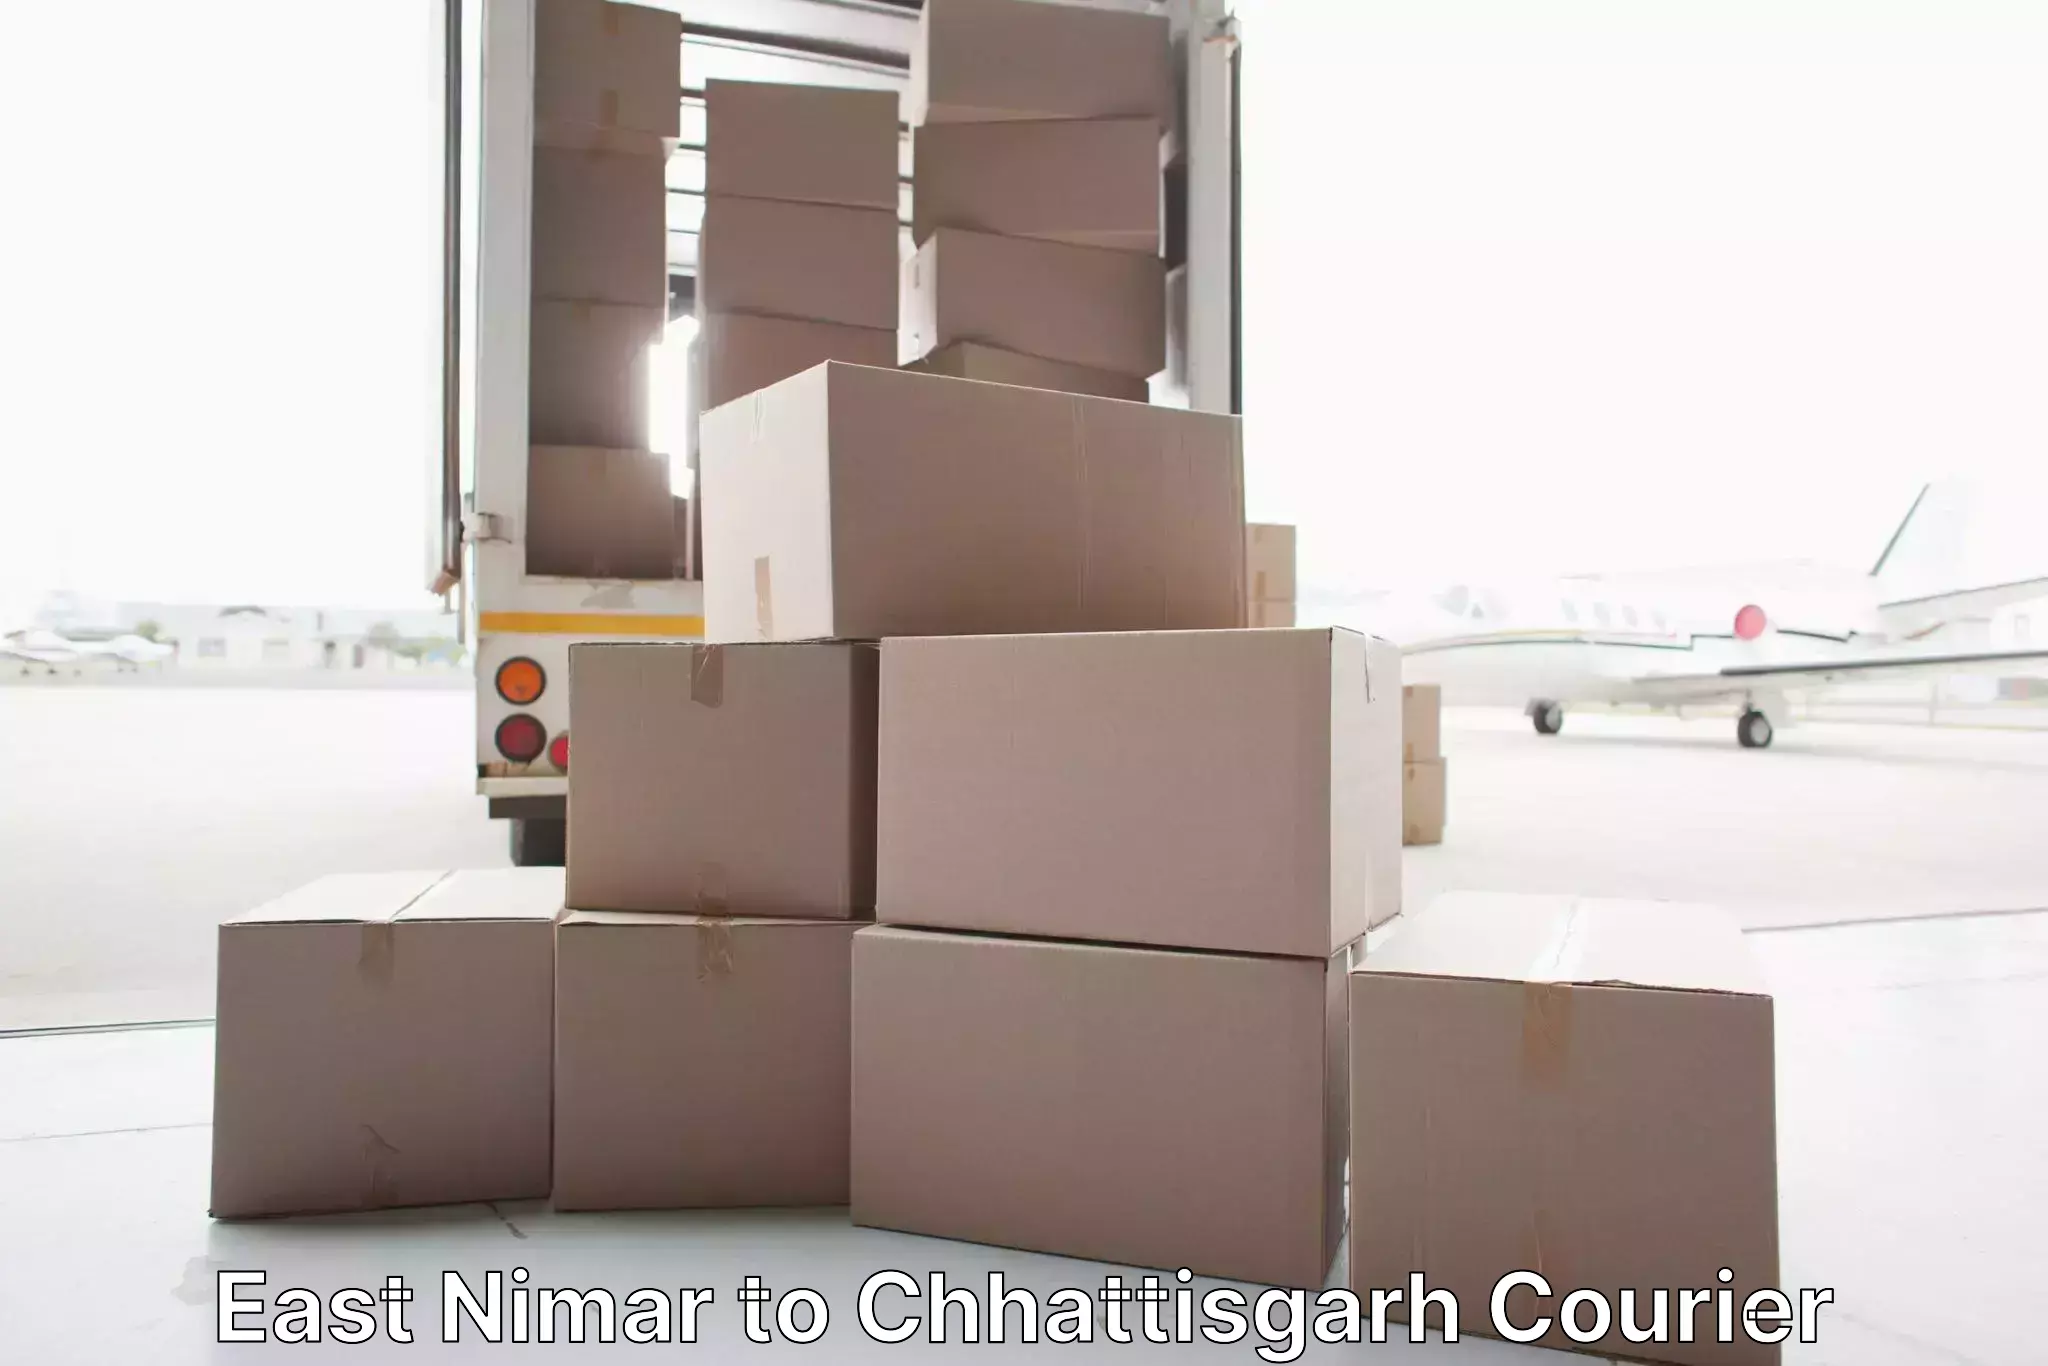 Trusted furniture transport East Nimar to Raipur